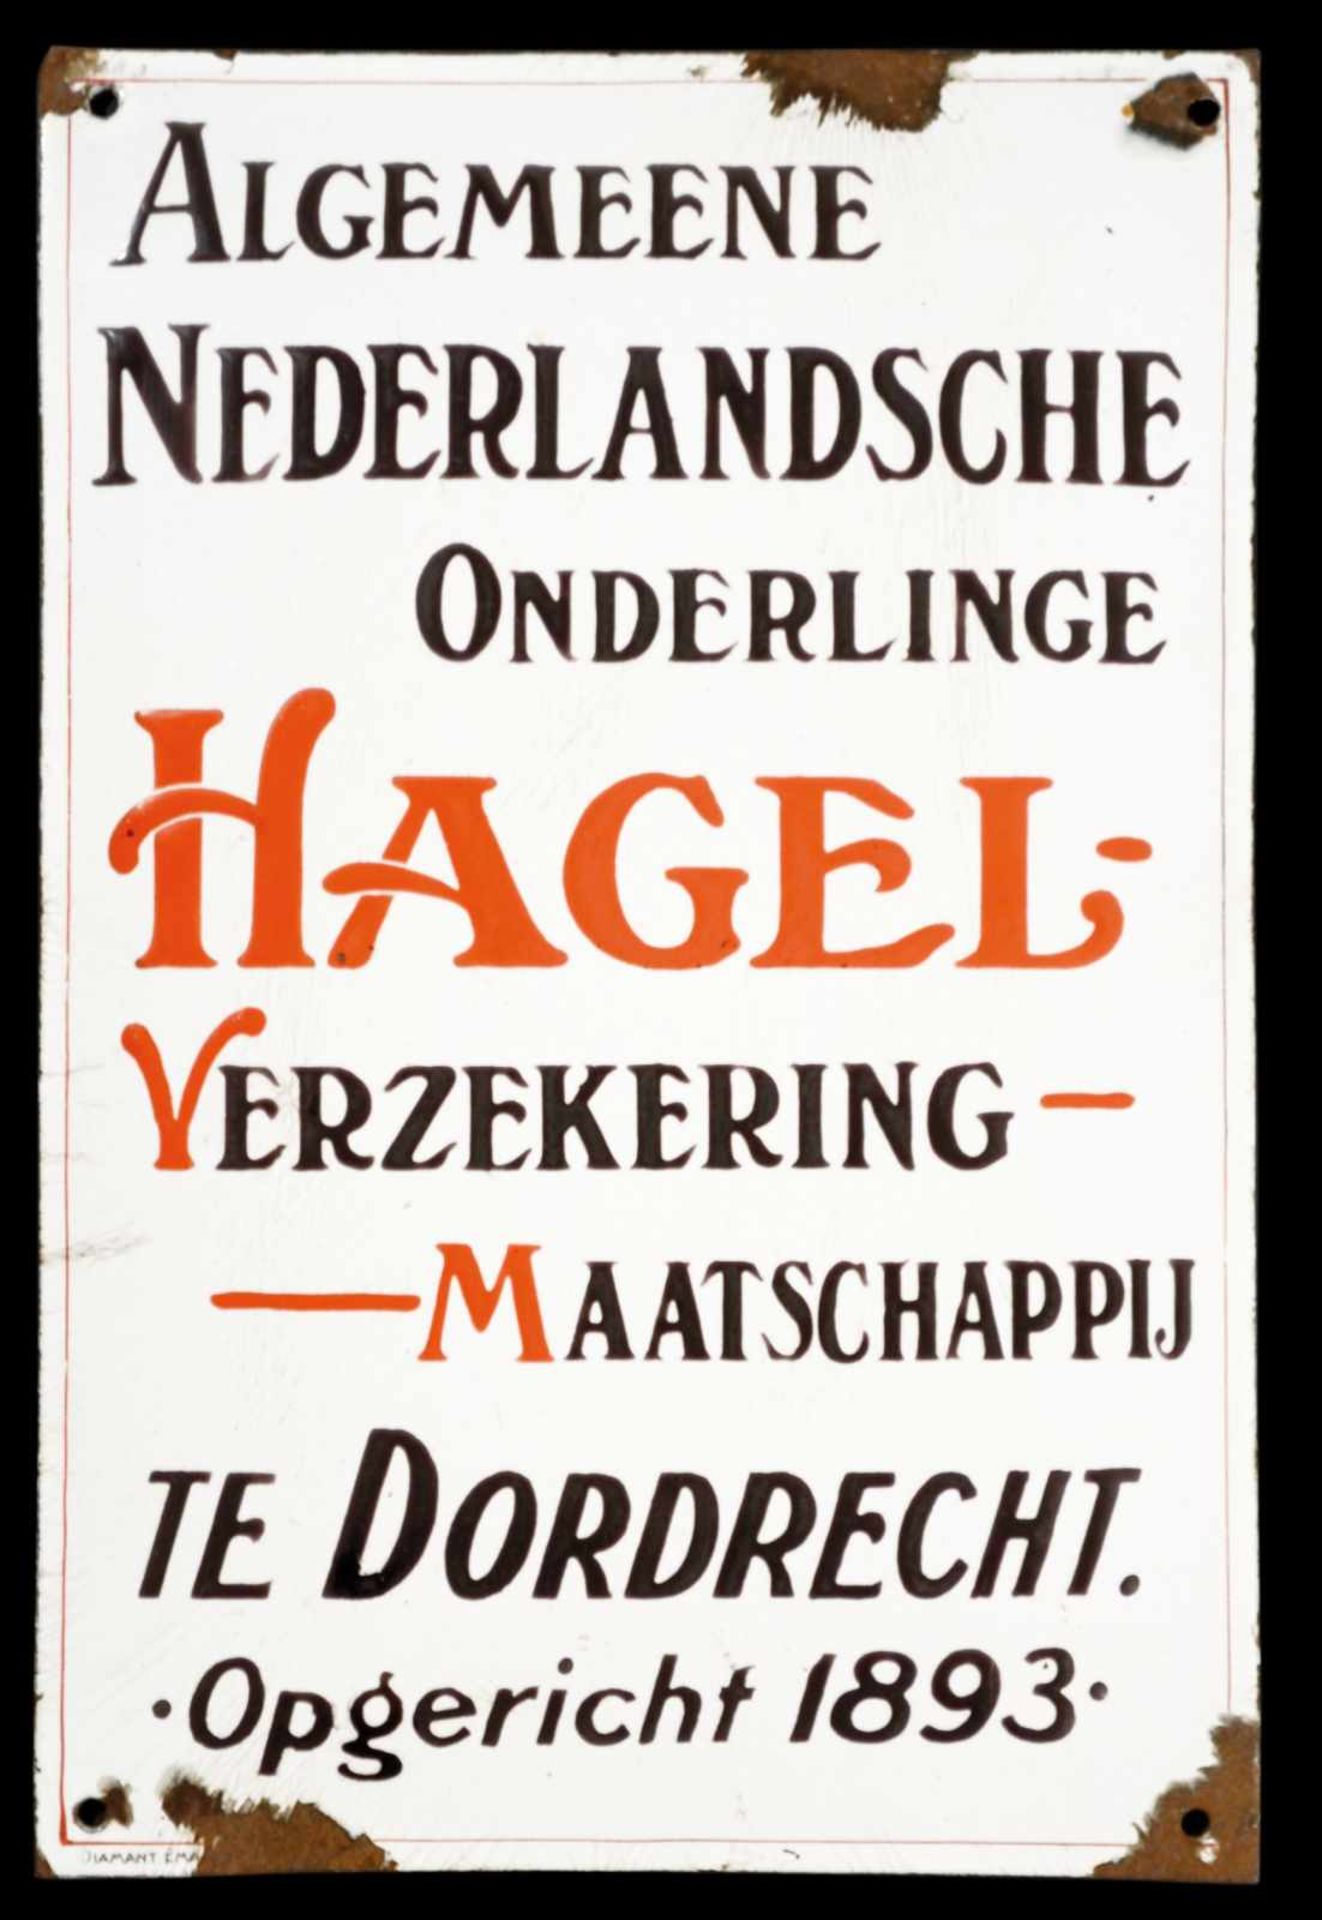 HAGEL-VERZEKERING (3) Emailschild, gewölbt, dick, teils zuckergußartig schabloniert, Dordrecht um